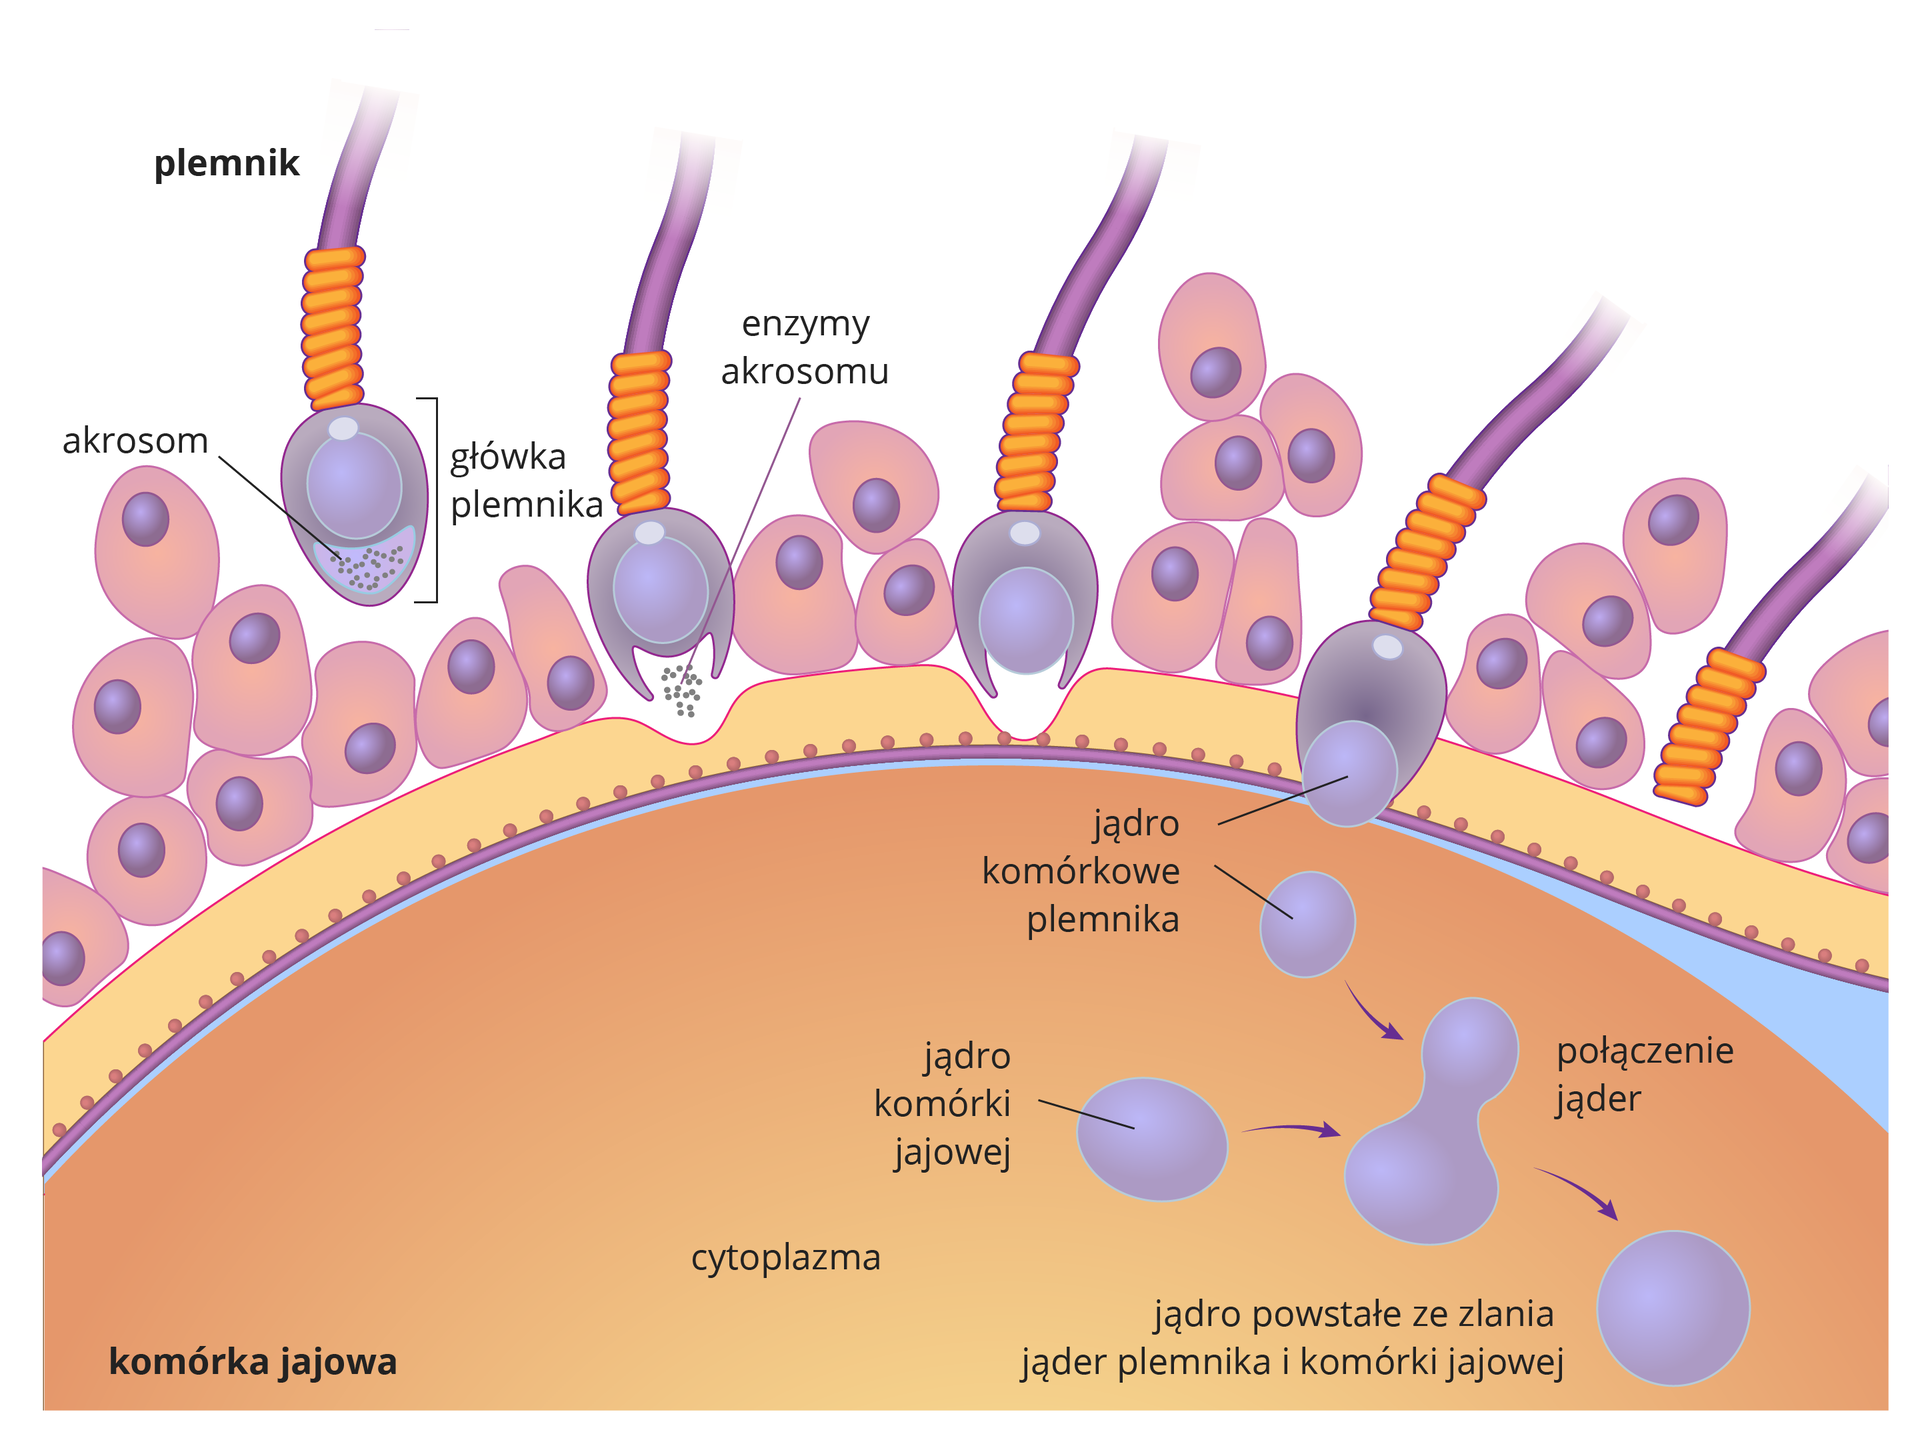 Ilustracja przedstawia beżową półkolistą komórkę jajową z grubą błoną i liliowymi komórkami osłony. Nad nią fioletowo – pomarańczowo – liliowe plemniki. Przedstawiono sześć etapów wnikania plemnika do komórki jajowej. W pierwszym z lewej plemnik zbliża się do komórki jajowej, podpisana główka plemnika i akrosom. W drugim etapie enzymy z akrosomu rozpuszczają osłonę komórki jajowej. W trzecim etapie plemnik przebija osłonę, do wnętrza komórki dociera tylko główka plemnika. Osłonka twardnieje, nie pozwalając innym plemnikom się przebić. W czwartym etapie plemnik uwalnia swoje jądro komórkowe. Jądro komórki jajowej znajduje się w cytoplazmie. W piątym etapie następuje połaczenie jąder plemnika i komórki jajowej. Witka plemnika odpada. W szóstym etapie z połączonych jąder powstaje jądro nowej komórki - zarodka.